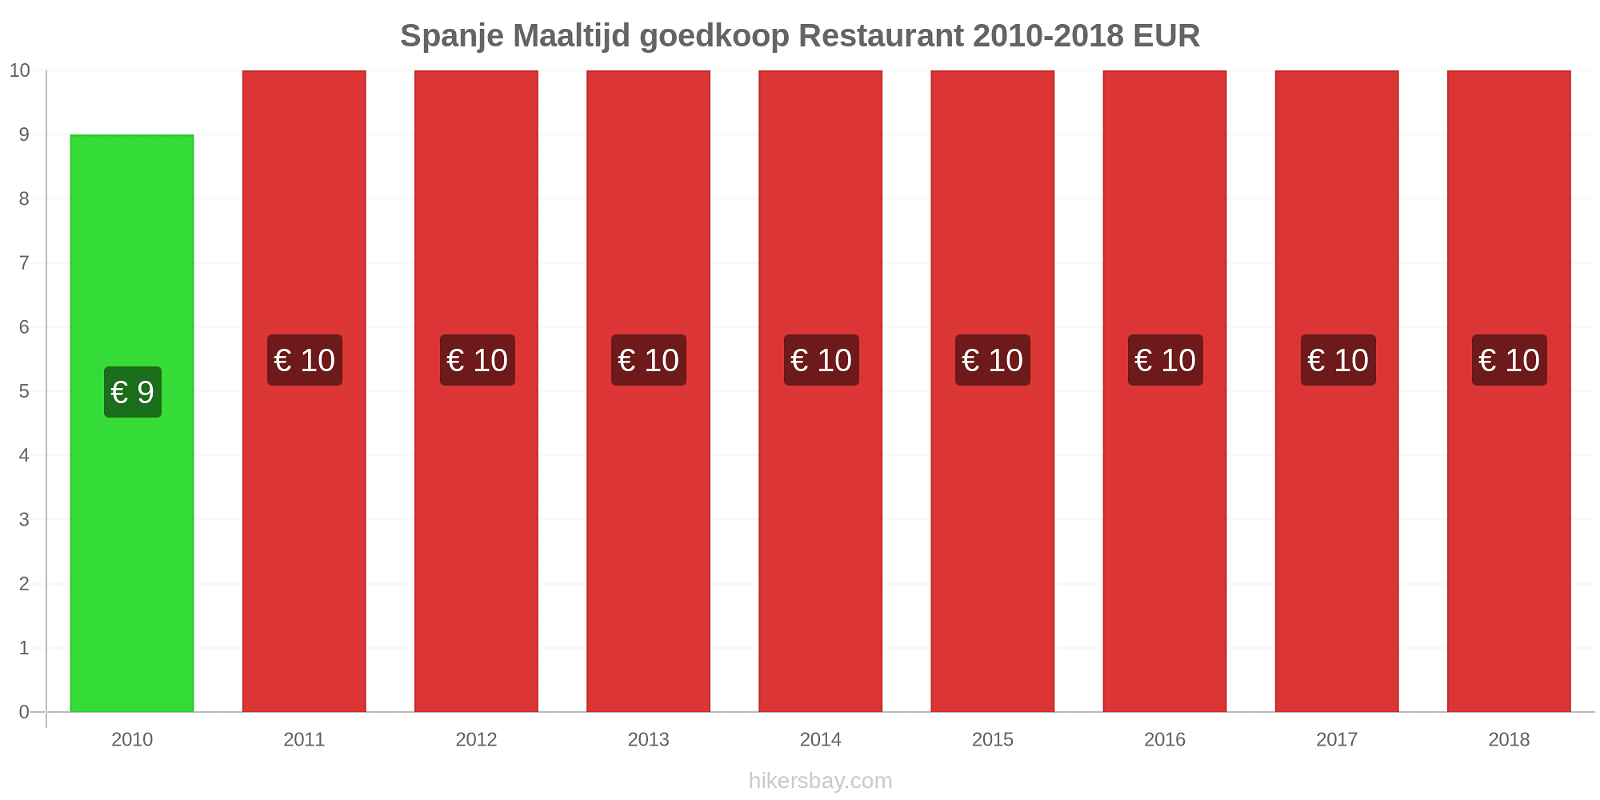 Spanje prijswijzigingen Maaltijd in een goedkoop restaurant hikersbay.com